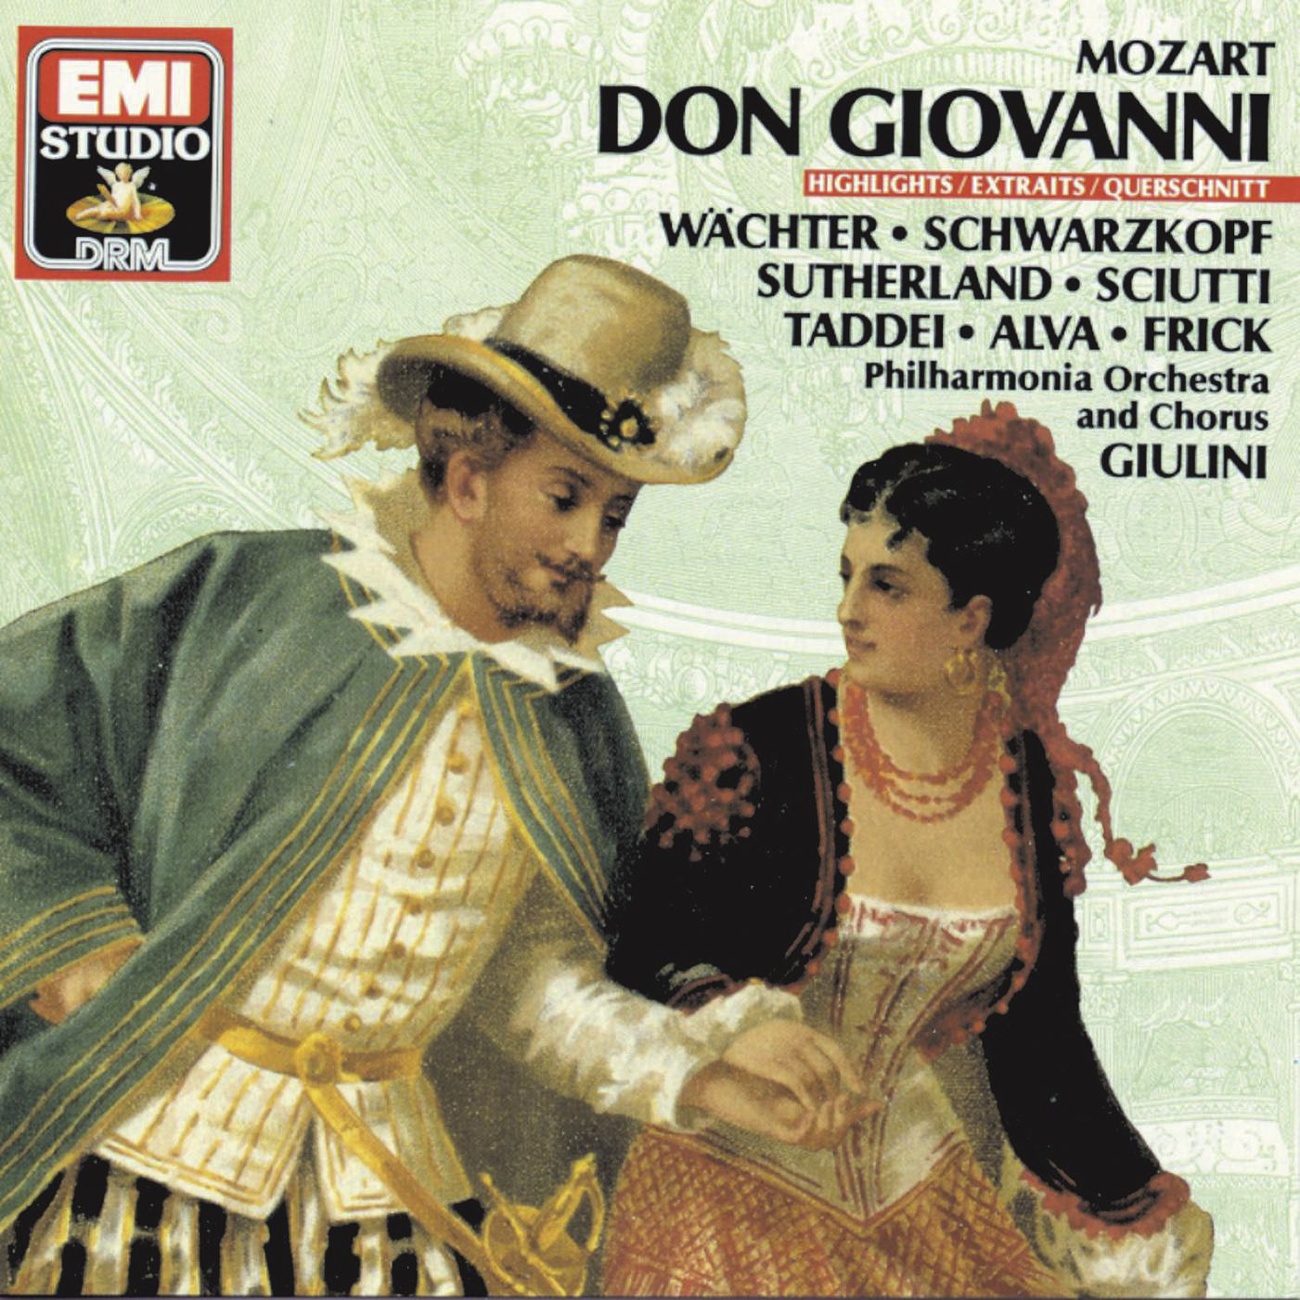 Don Giovanni 1987 Digital Remaster, Act 1: La ci darem la mano Don Giovanni, Zerlina